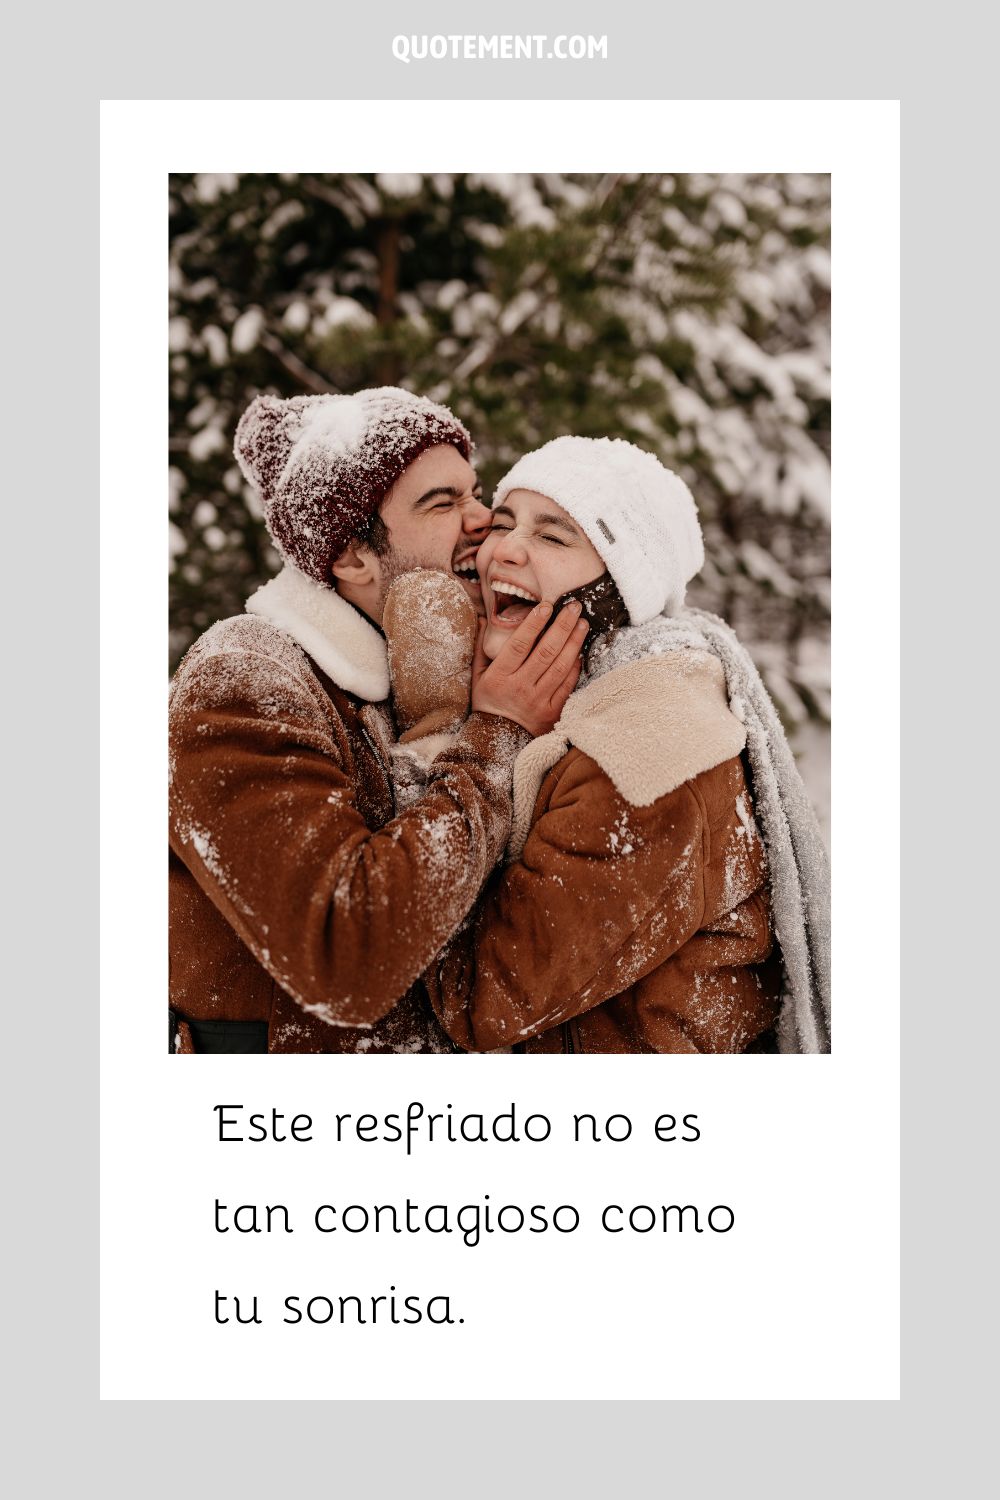 una pareja sonríe de felicidad mientras comparte un cariñoso abrazo en una escena nevada